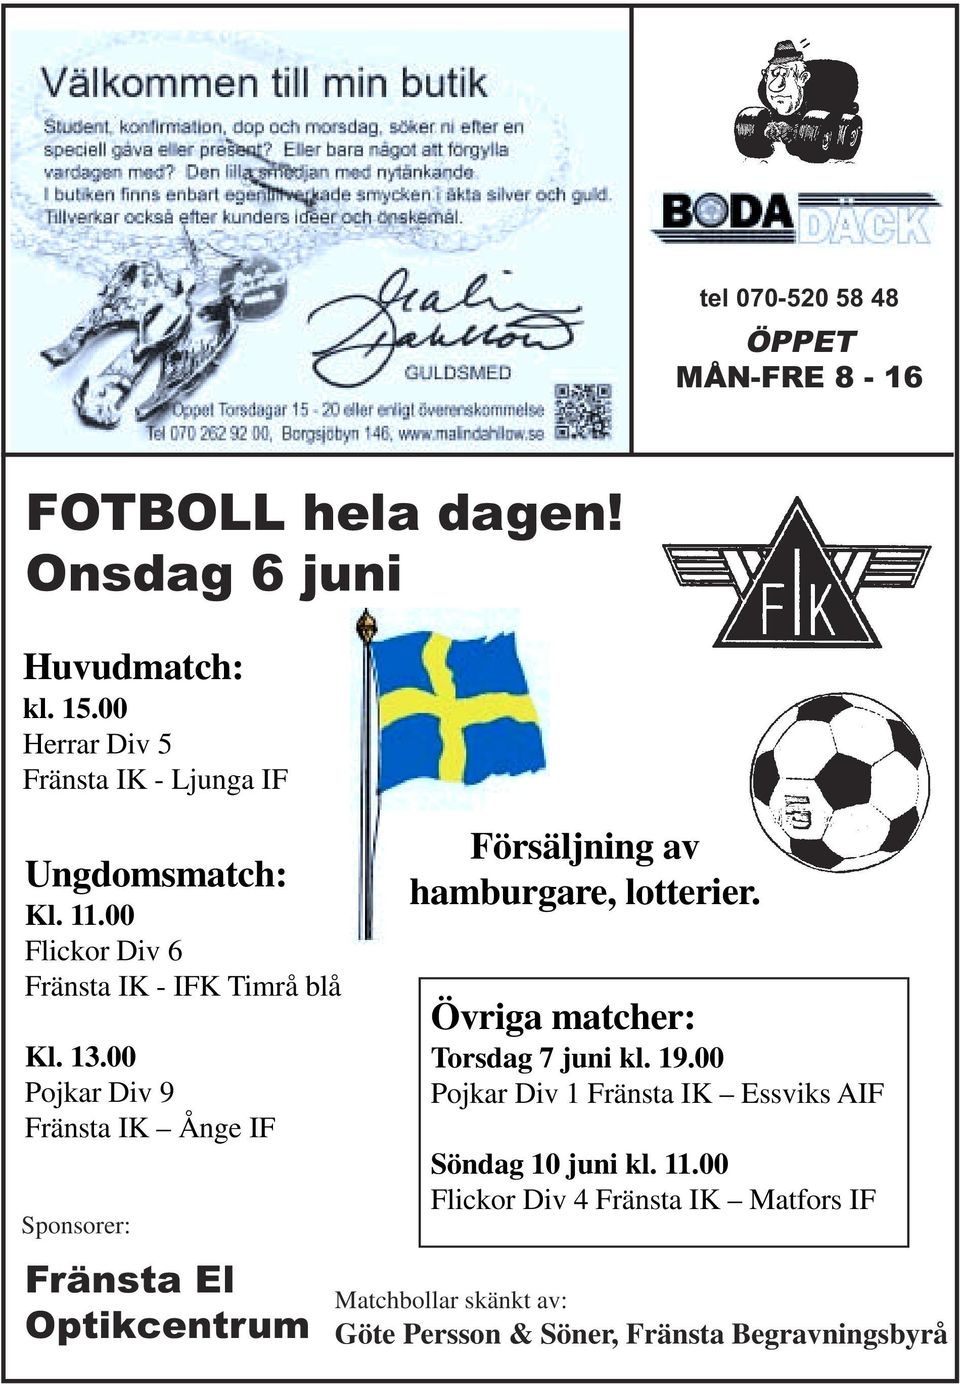 00 Pojkar Div 9 Fränsta IK Ånge IF Sponsorer: Fränsta El Optikcentrum Försäljning av hamburgare, lotterier.